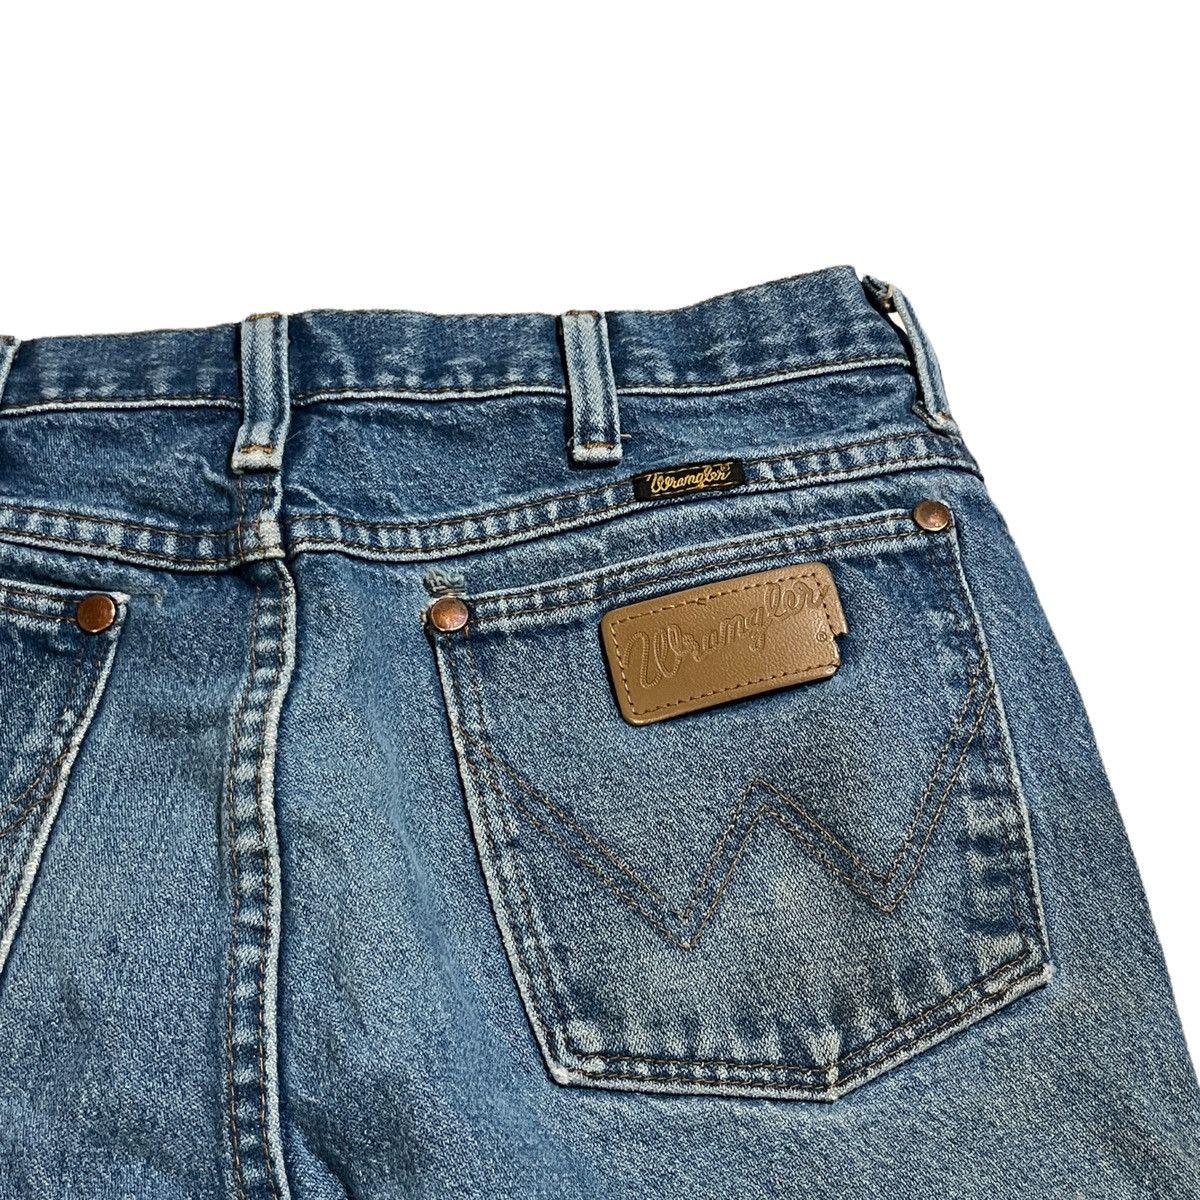 Vintage Vintage Wrangler 936DEN Patched Jeans Size US 31 - 6 Preview